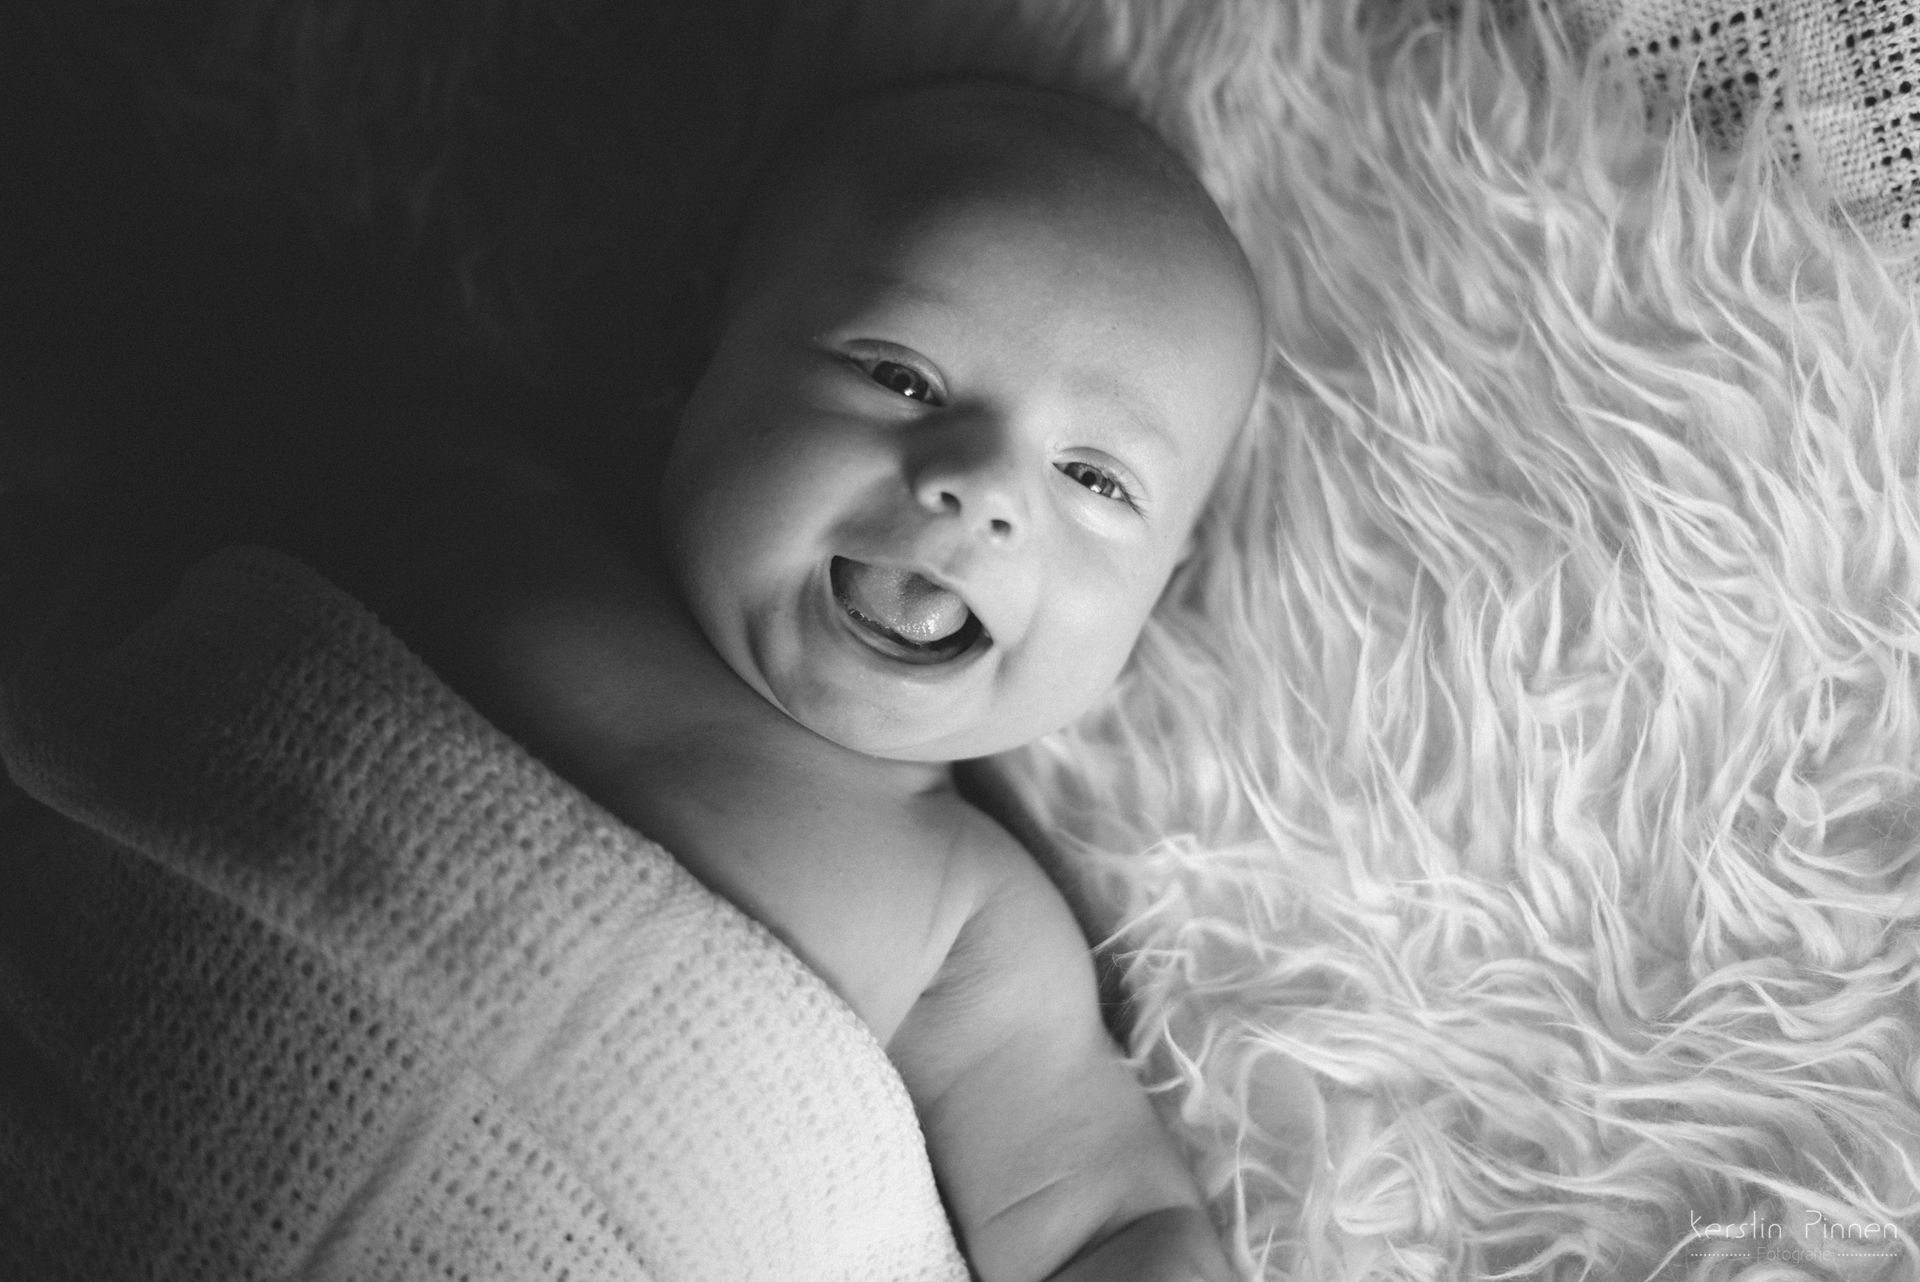 Baby-Foto schwarz weiß